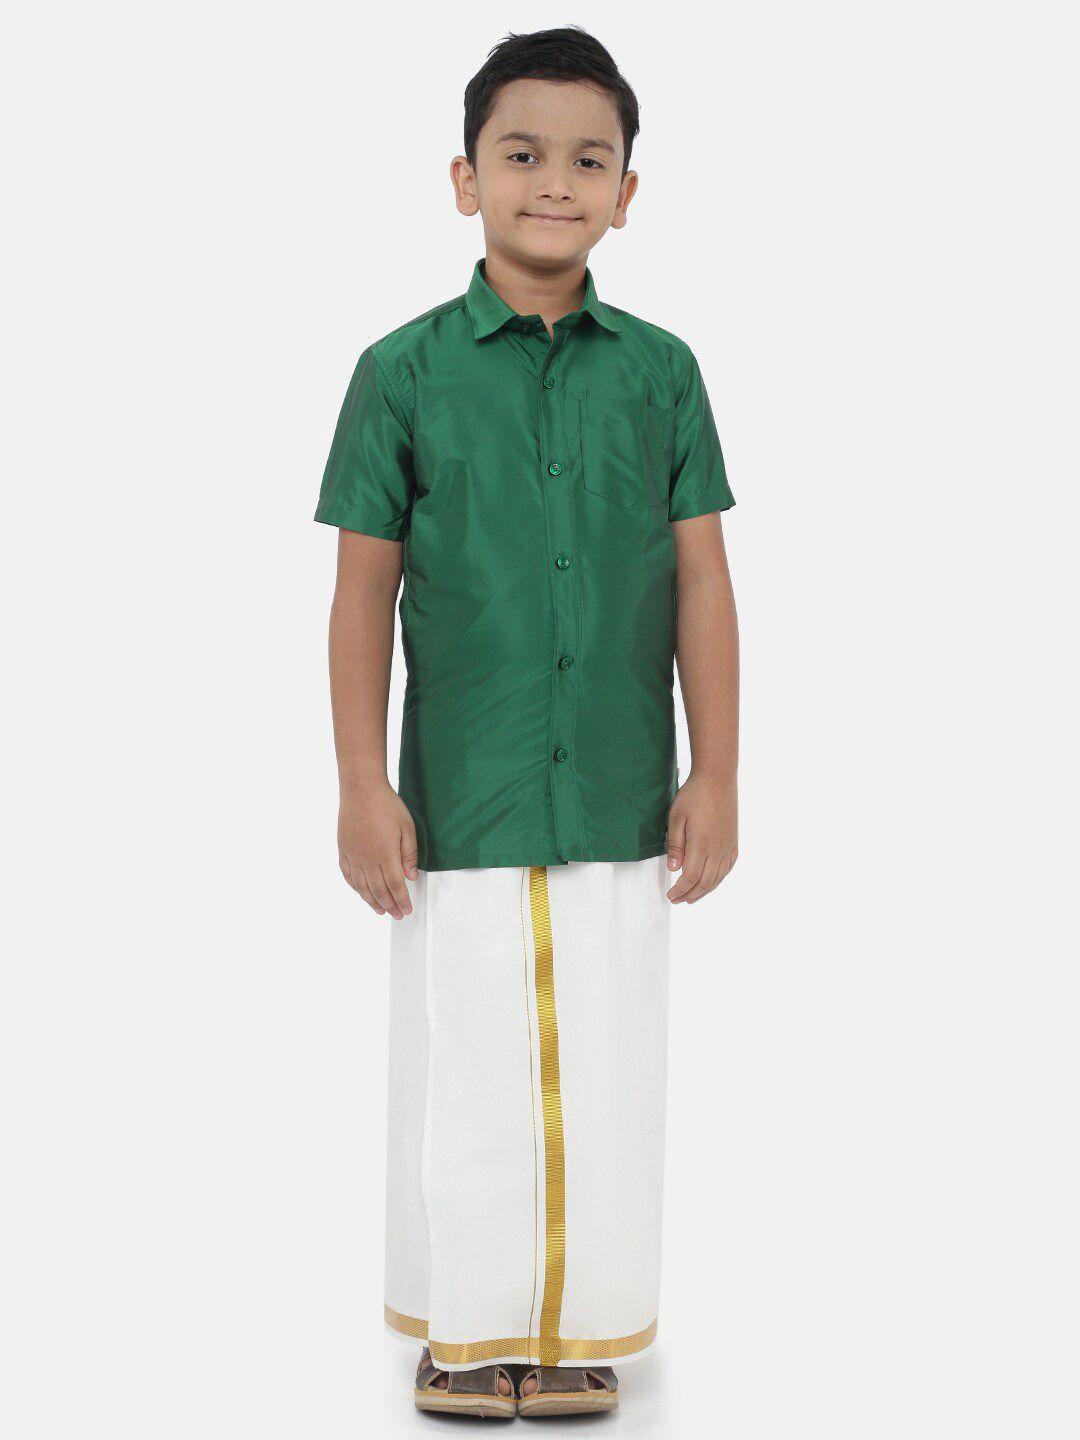 littlestars boys green & white shirt with dhoti